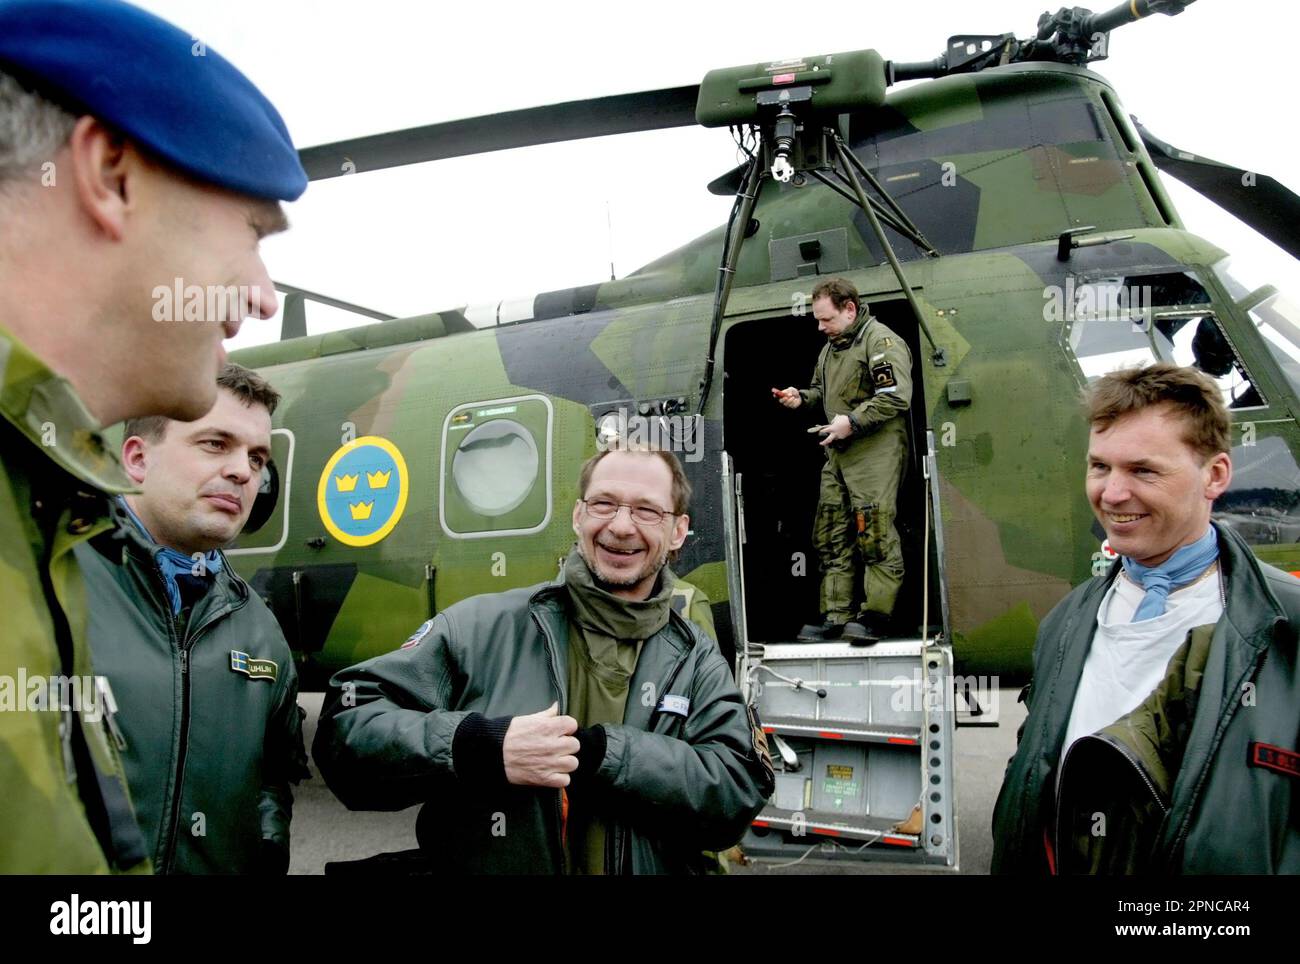 Helikopter 4 der schwedischen Luftwaffe, HKP 4, vom Helikopter-Bataillon, Marinestützpunkt Berga. HKP 4 wurde bei der U-Boot-Jagd und bei Rettungsmissionen wie der Estonia-Katastrophe eingesetzt. Auf dem Bild: Die Hubschraubercrew vor dem Hubschrauber. Stockfoto